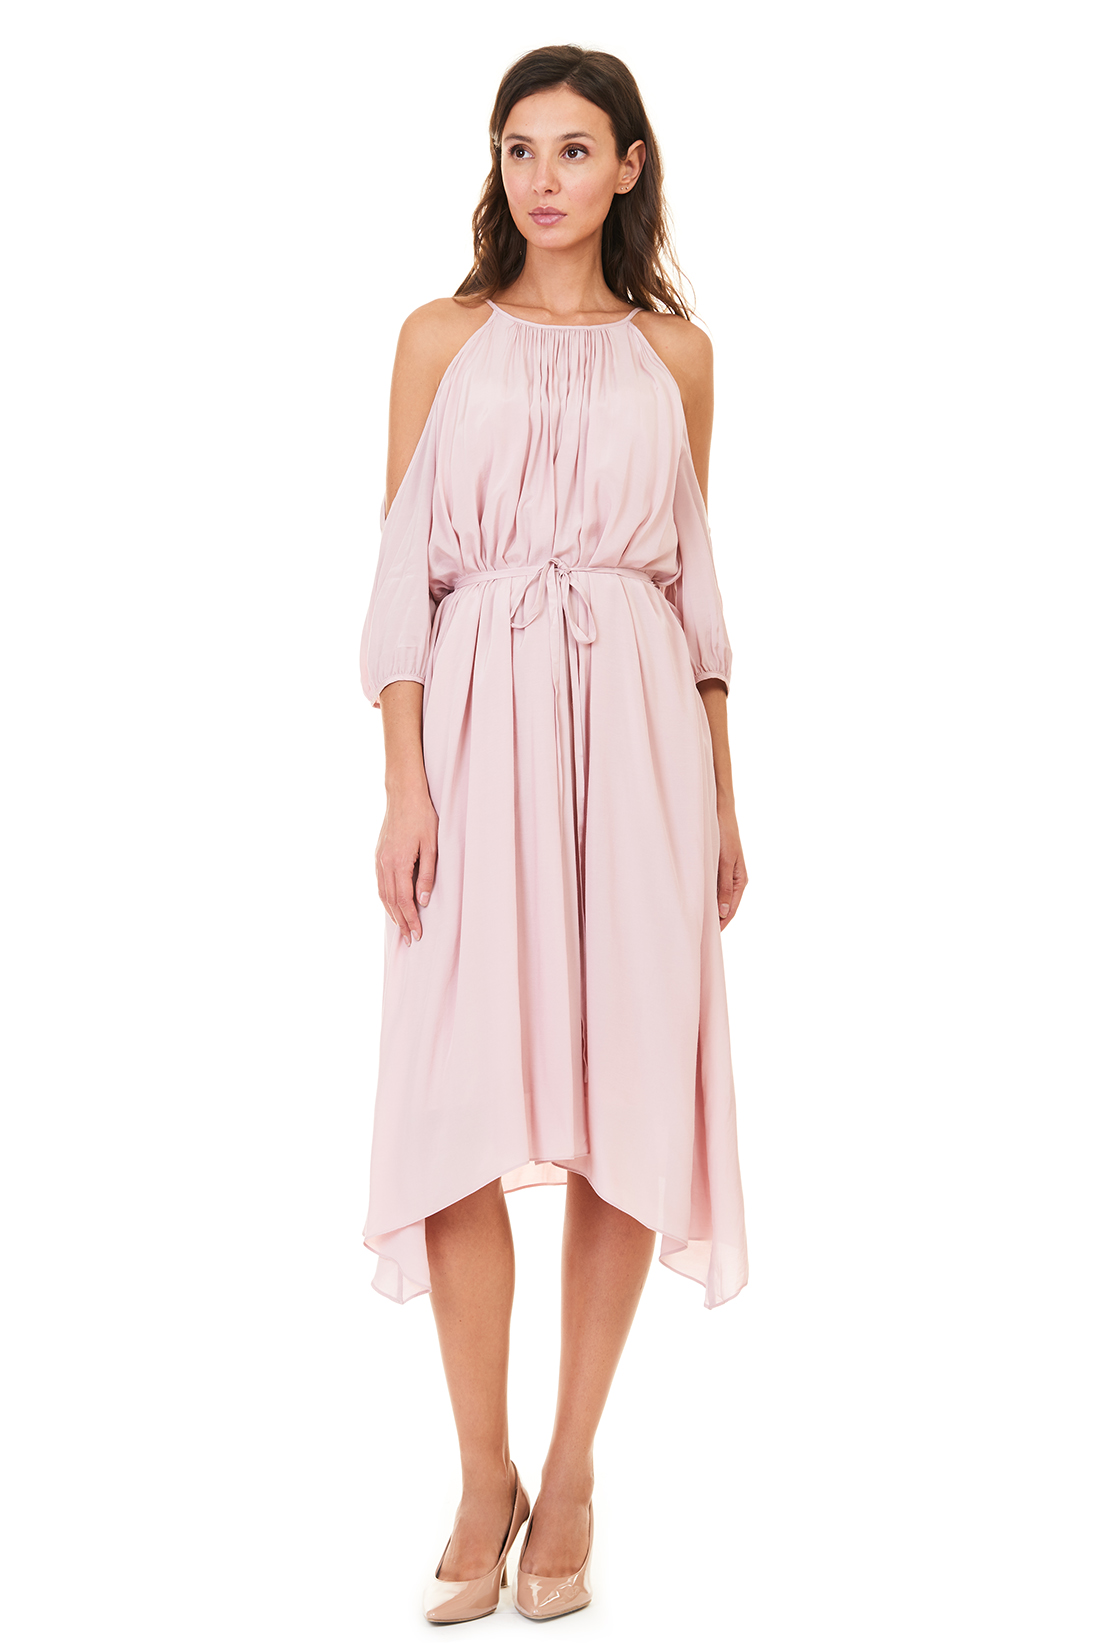 Платье-туника с открытыми плечами (арт. baon B457105), размер XL, цвет розовый Платье-туника с открытыми плечами (арт. baon B457105) - фото 4